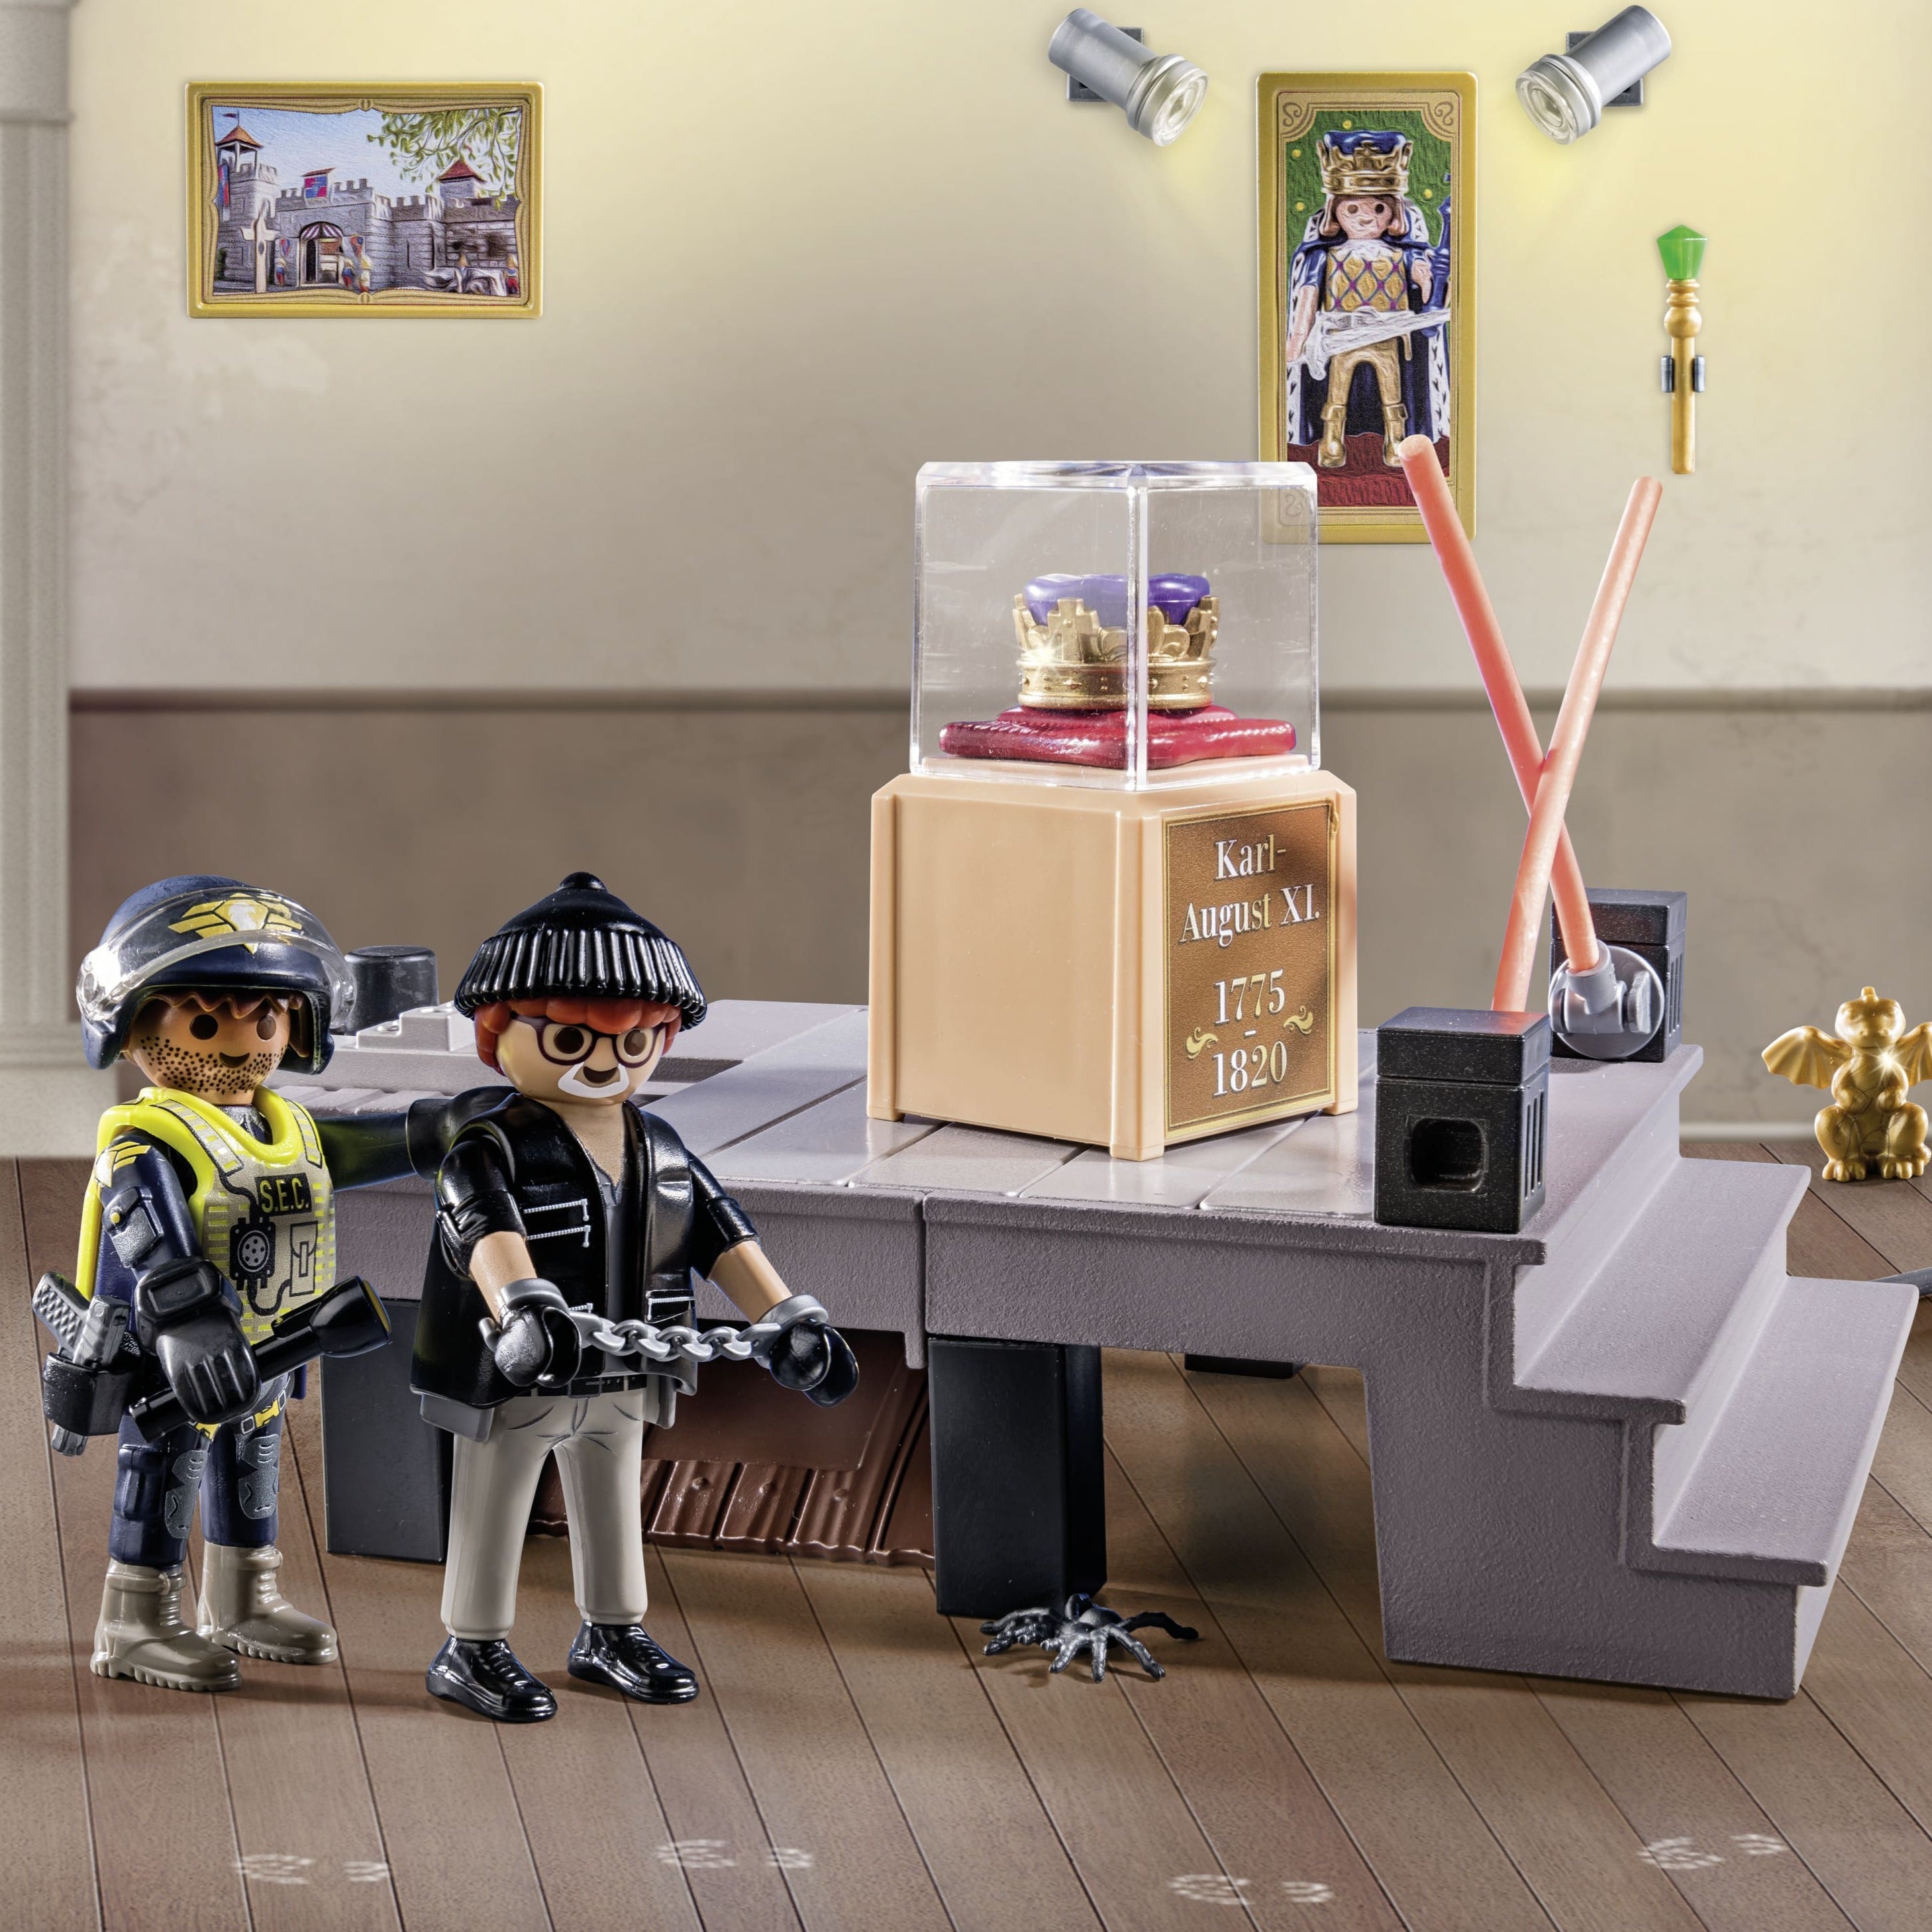 Playmobil: Адвент календар Полиция. кражба в музея Коледа